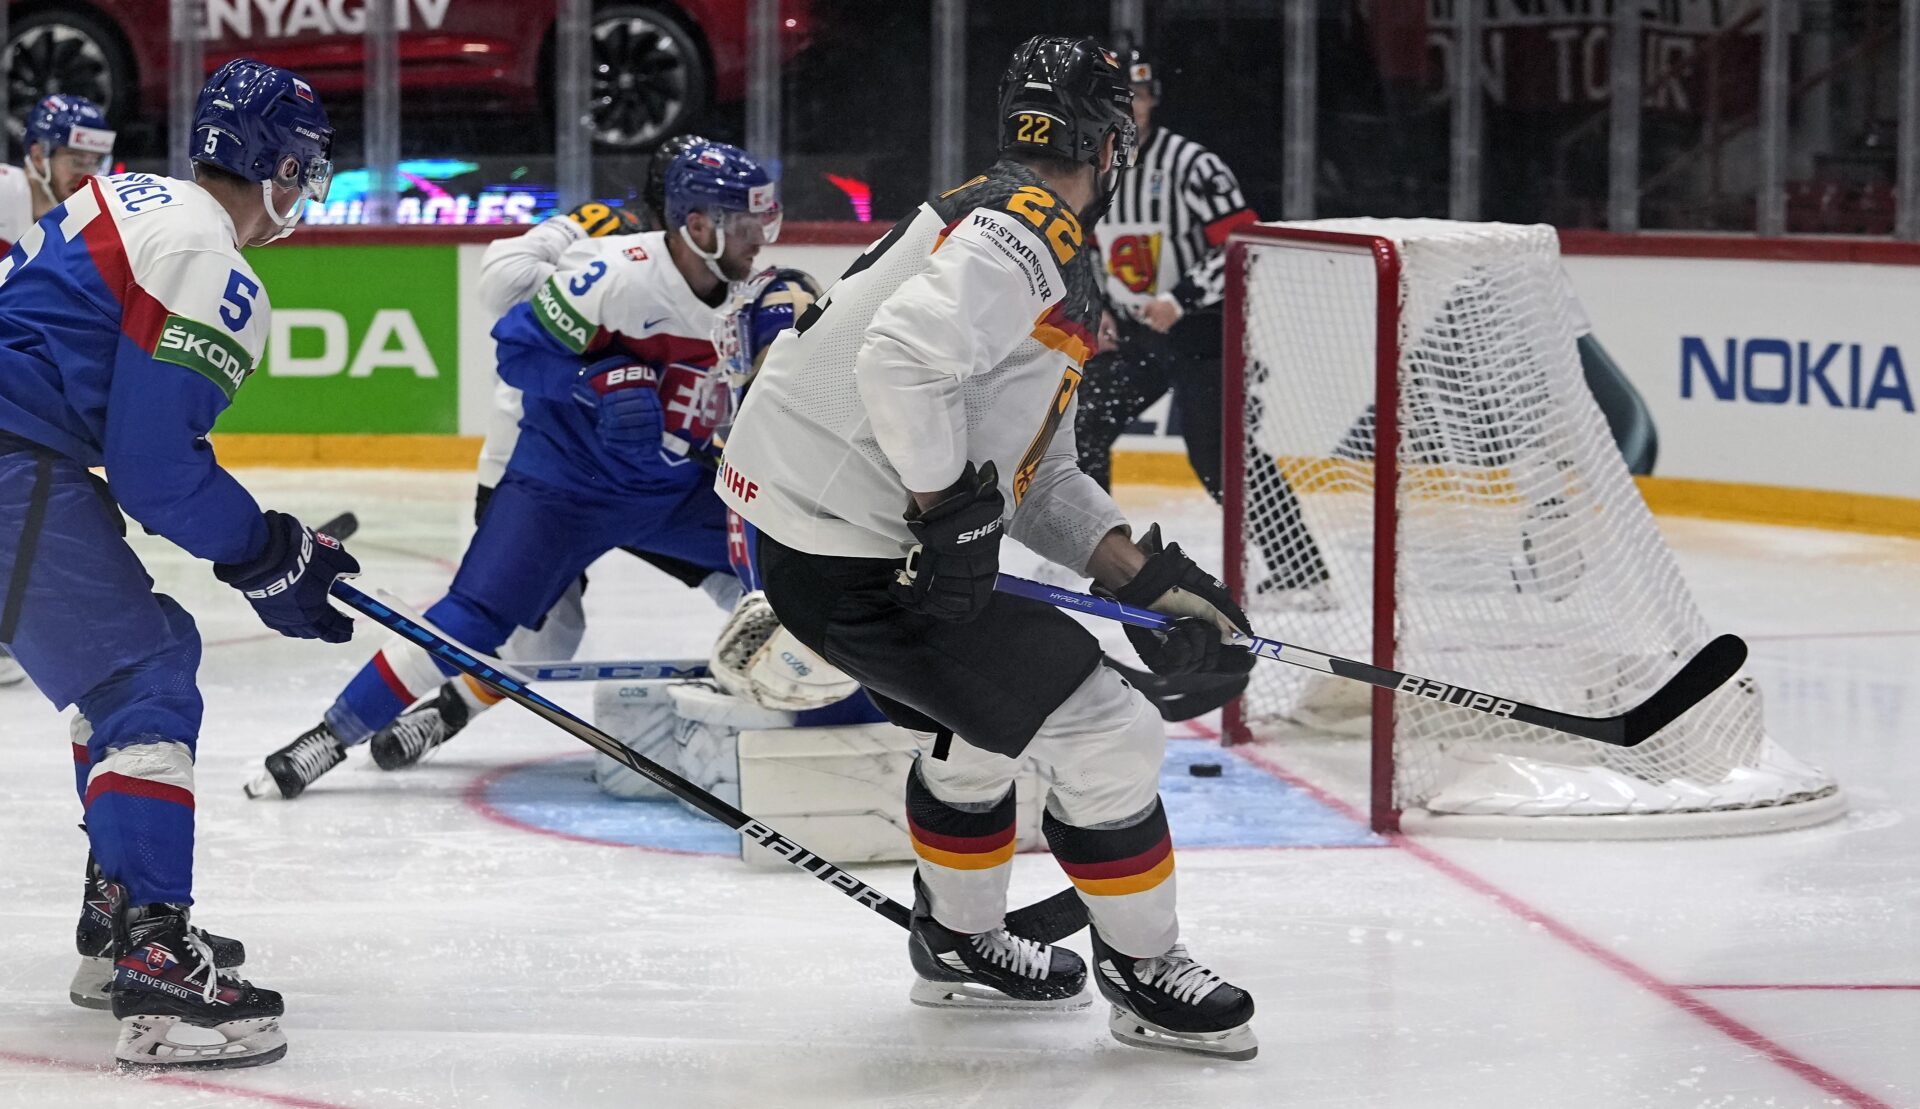 ANKETA: Má Slovensko šancu na výhru v hokeji?